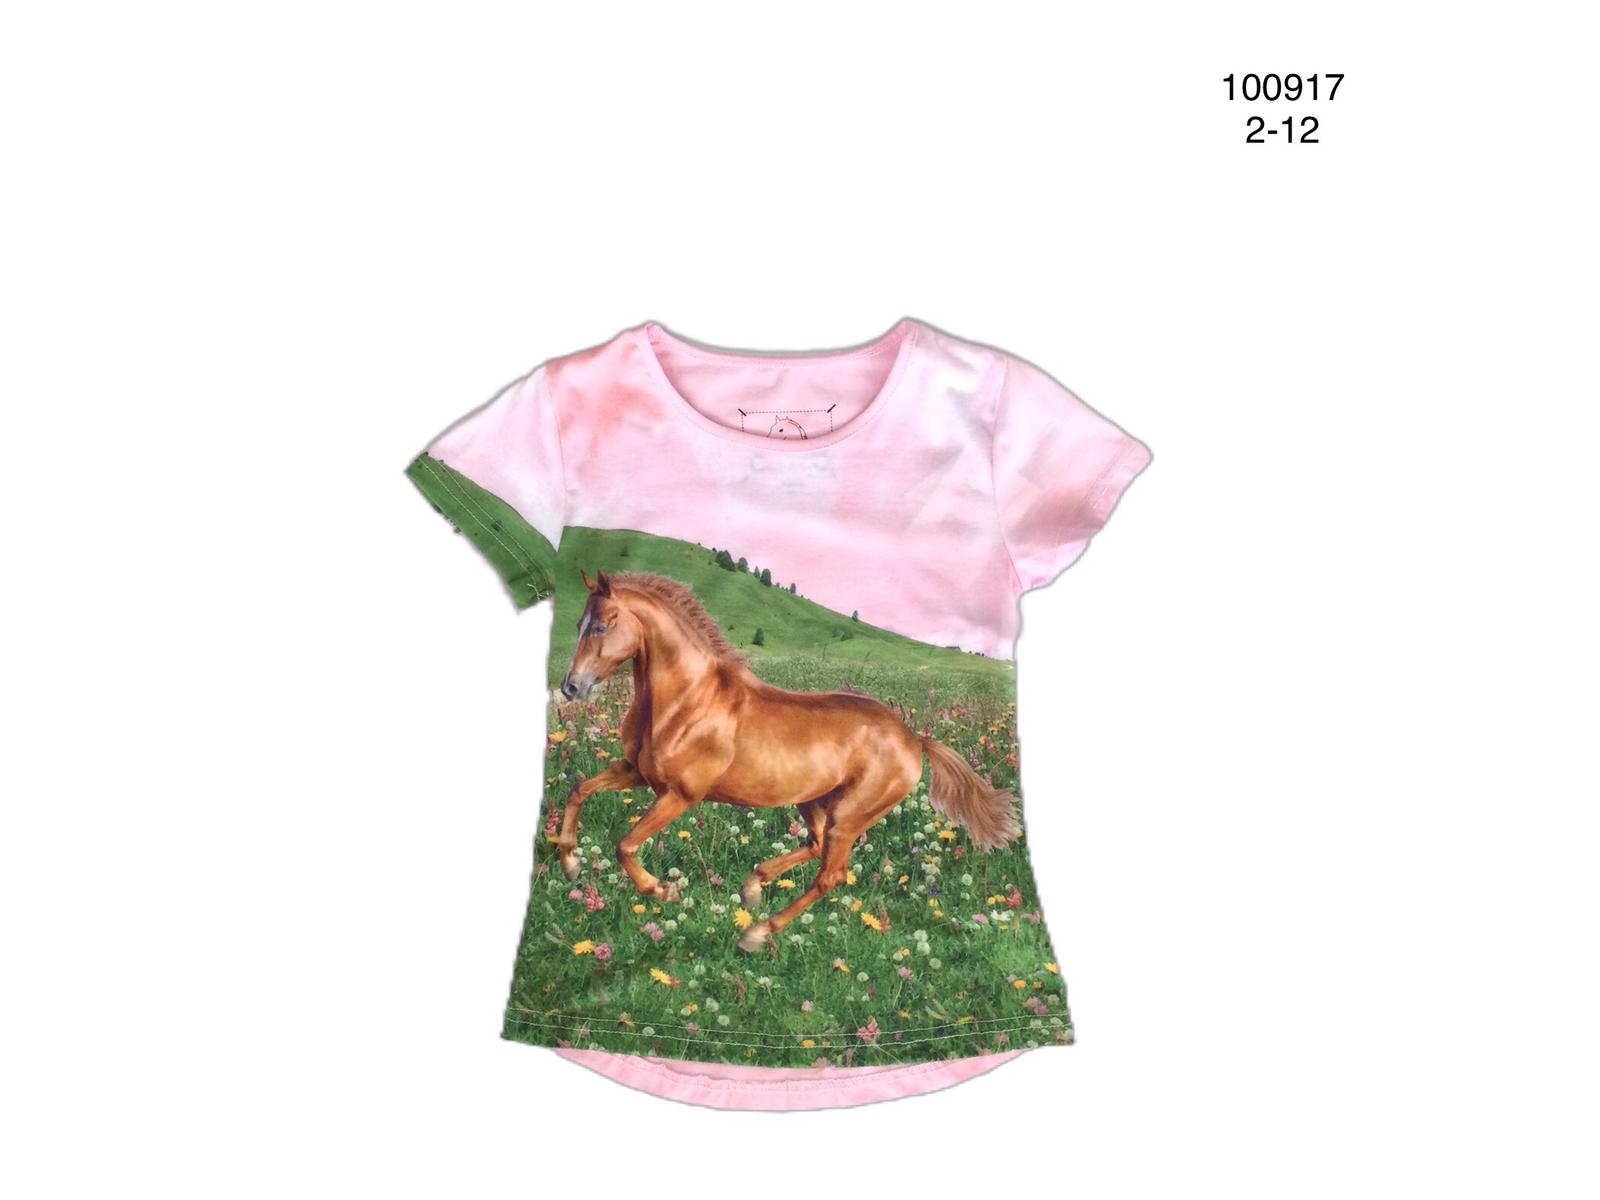 Roze shirt met paard